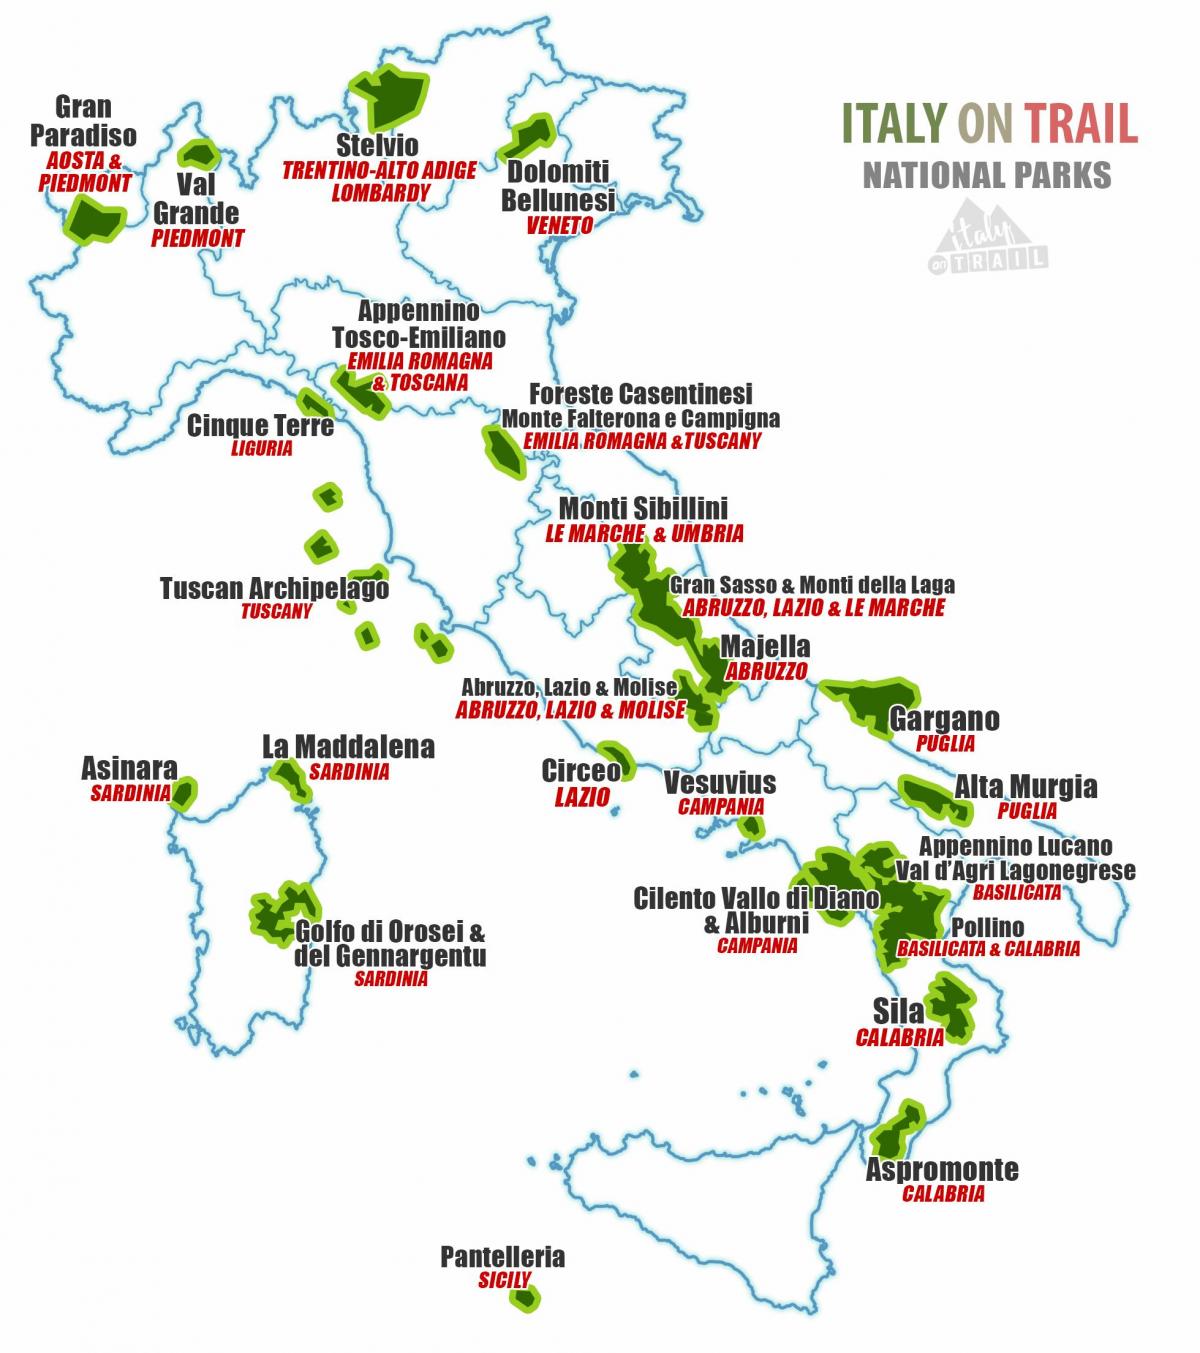 Italien national parks anzeigen